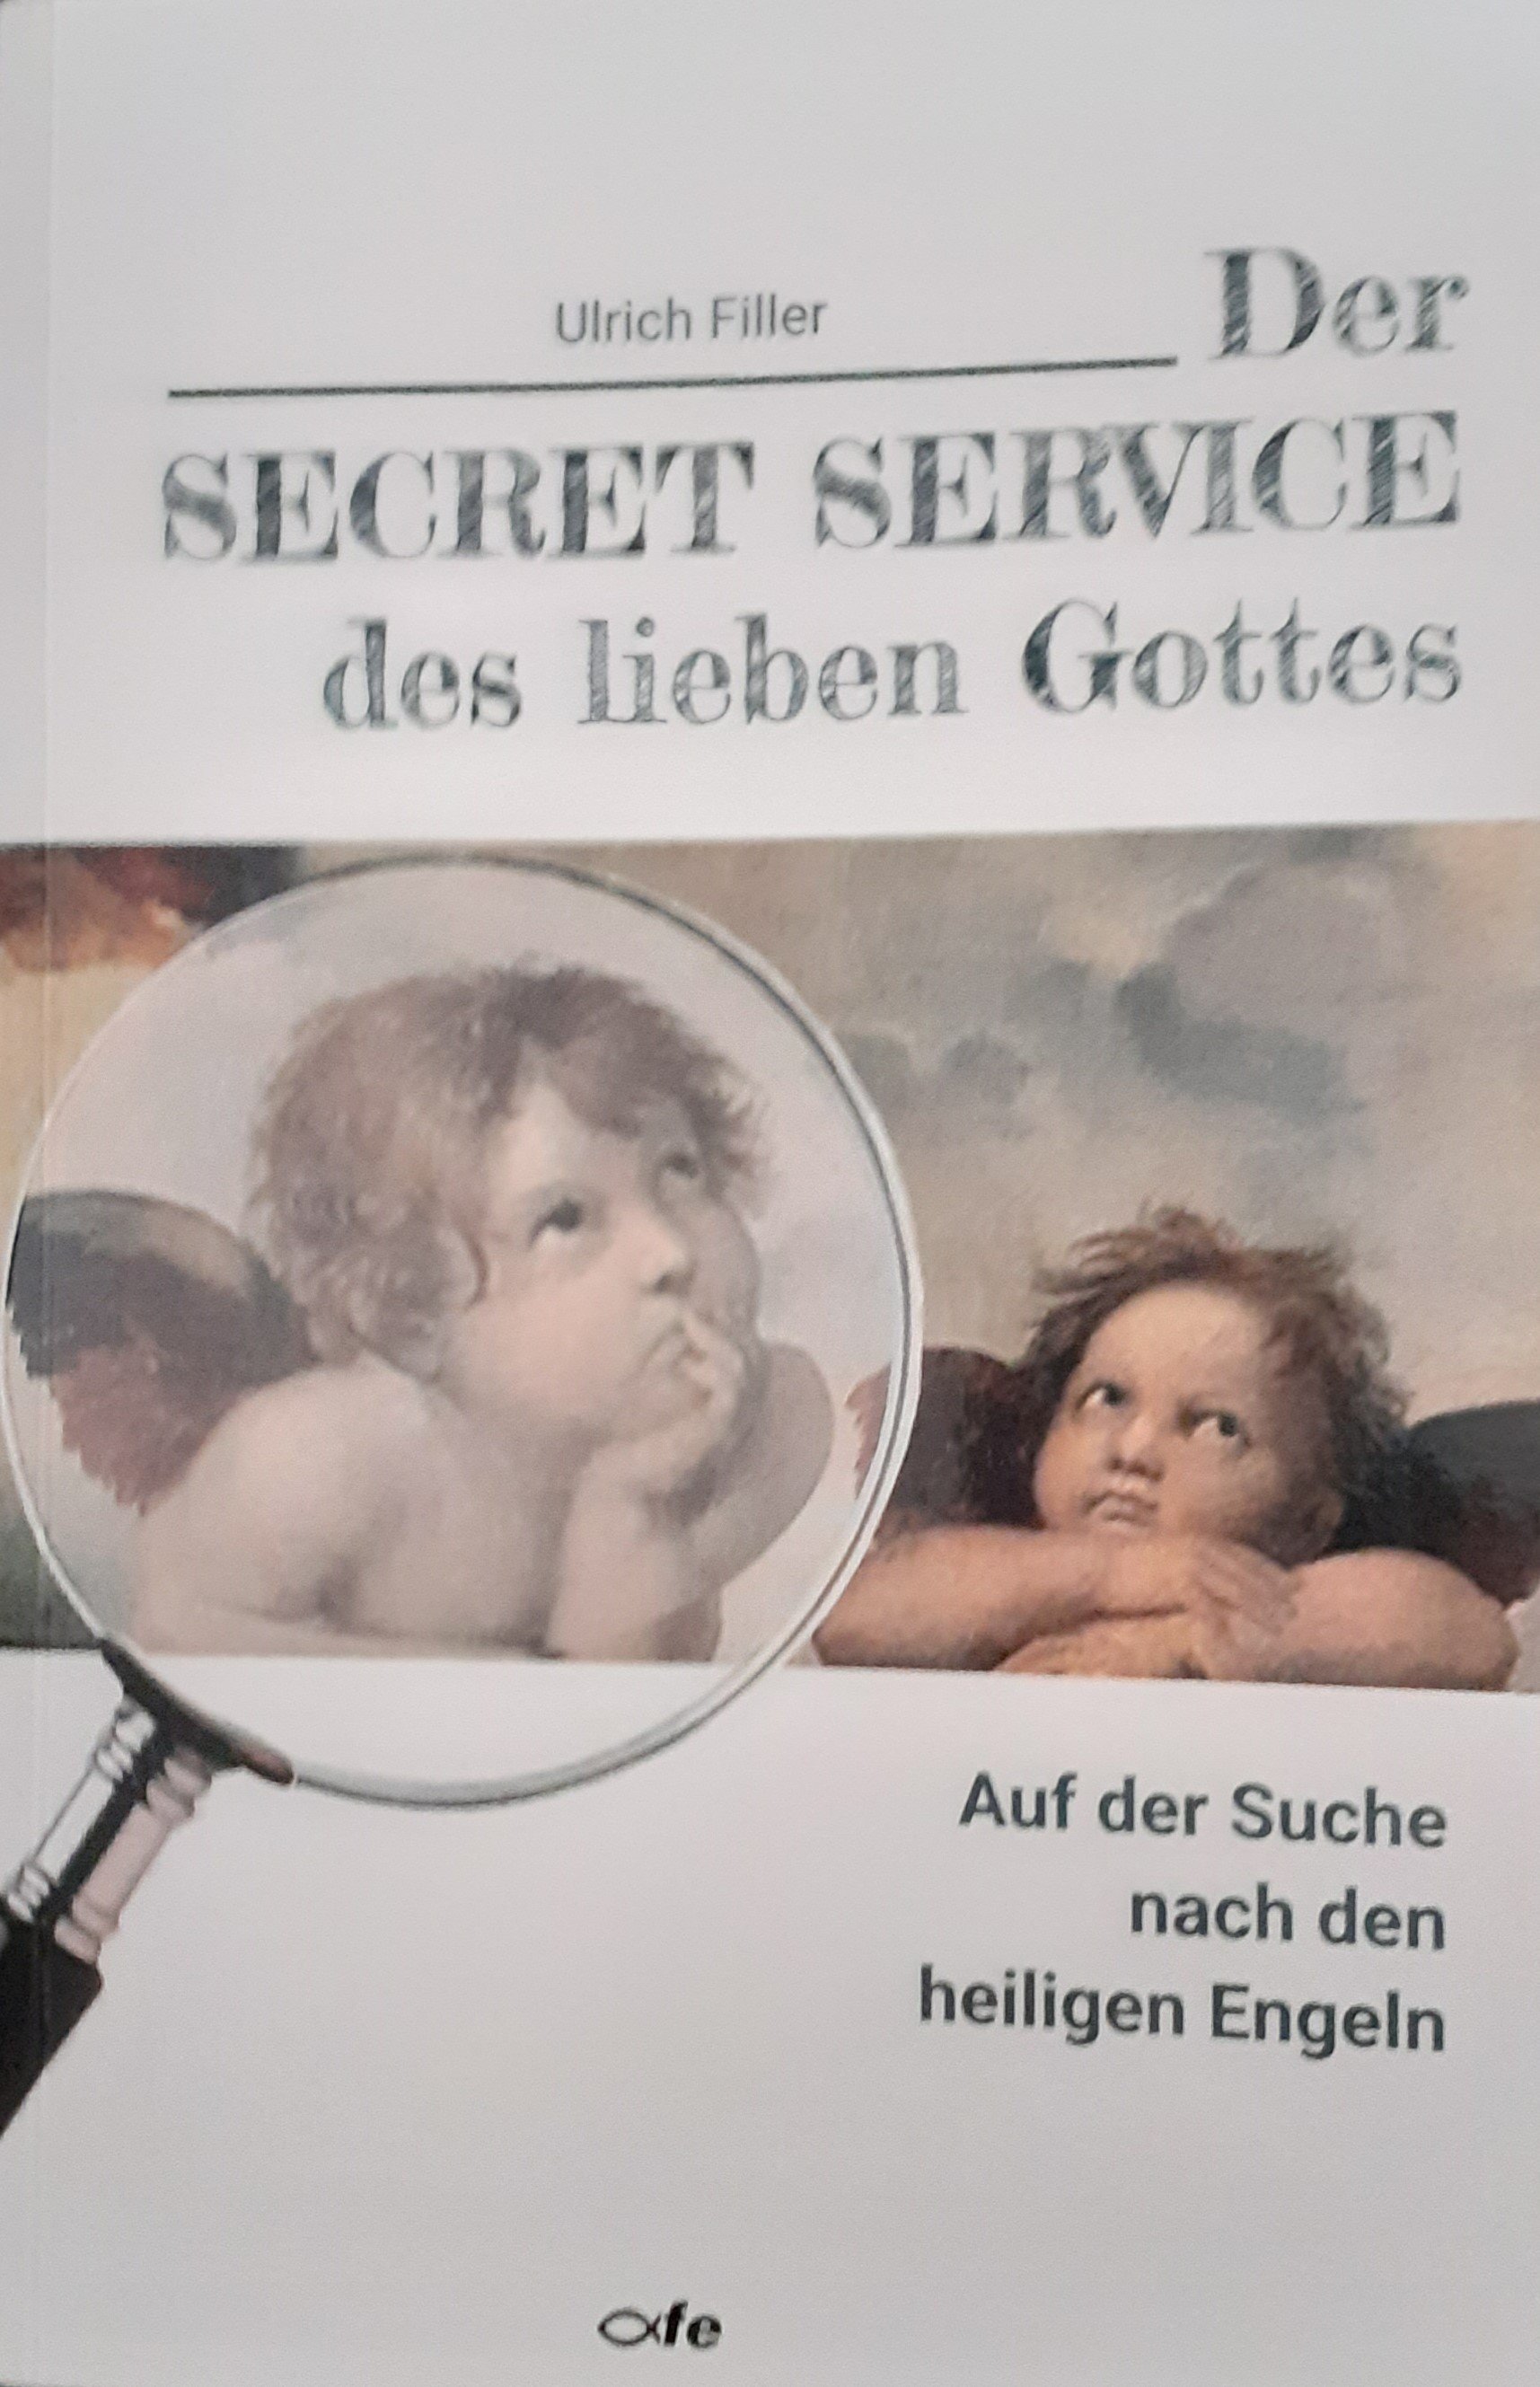 Der Secret Service des lieben Gottes. Auf der Suche nach den heiligen Engeln. Von Ulrich Filler, 2021 im fe-Verlag erschienen.